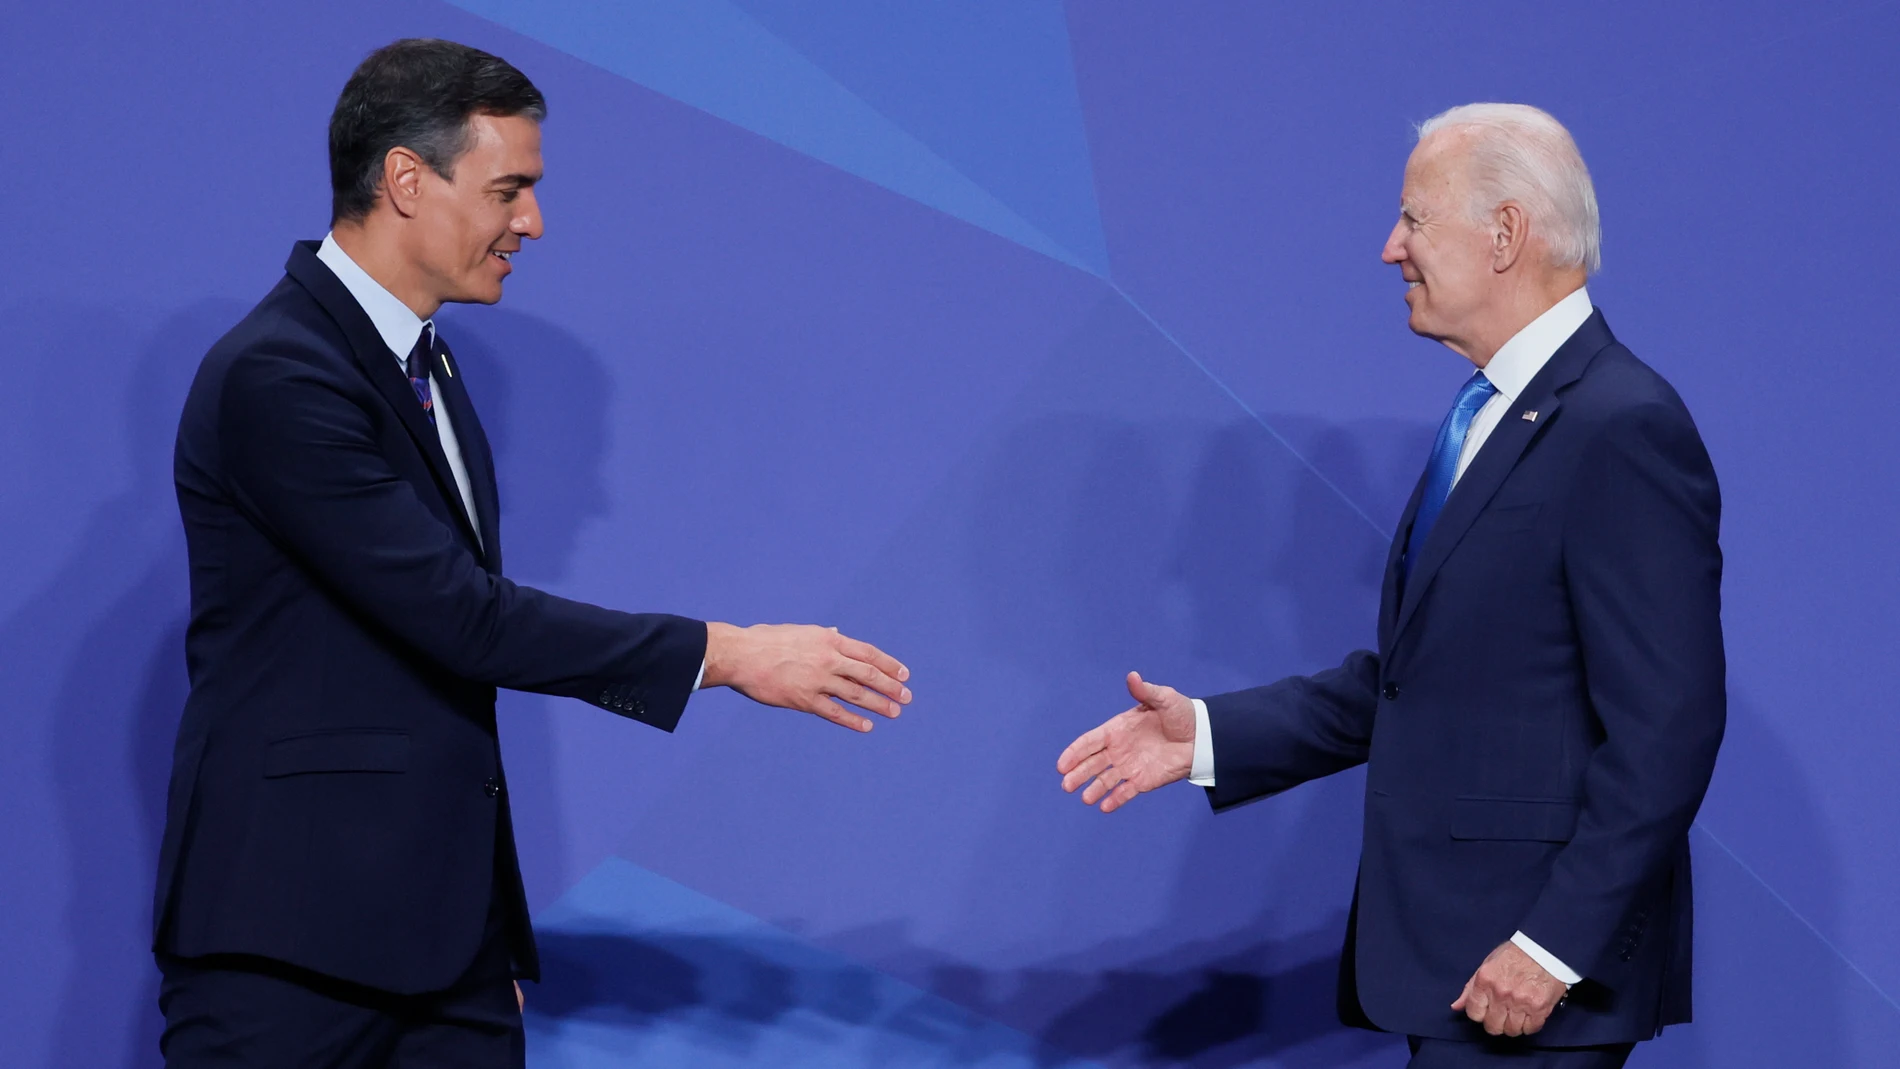 El presidente del Gobierno, Pedro Sánchez, saluda al presidente de los Estados Unidos, Joe Biden